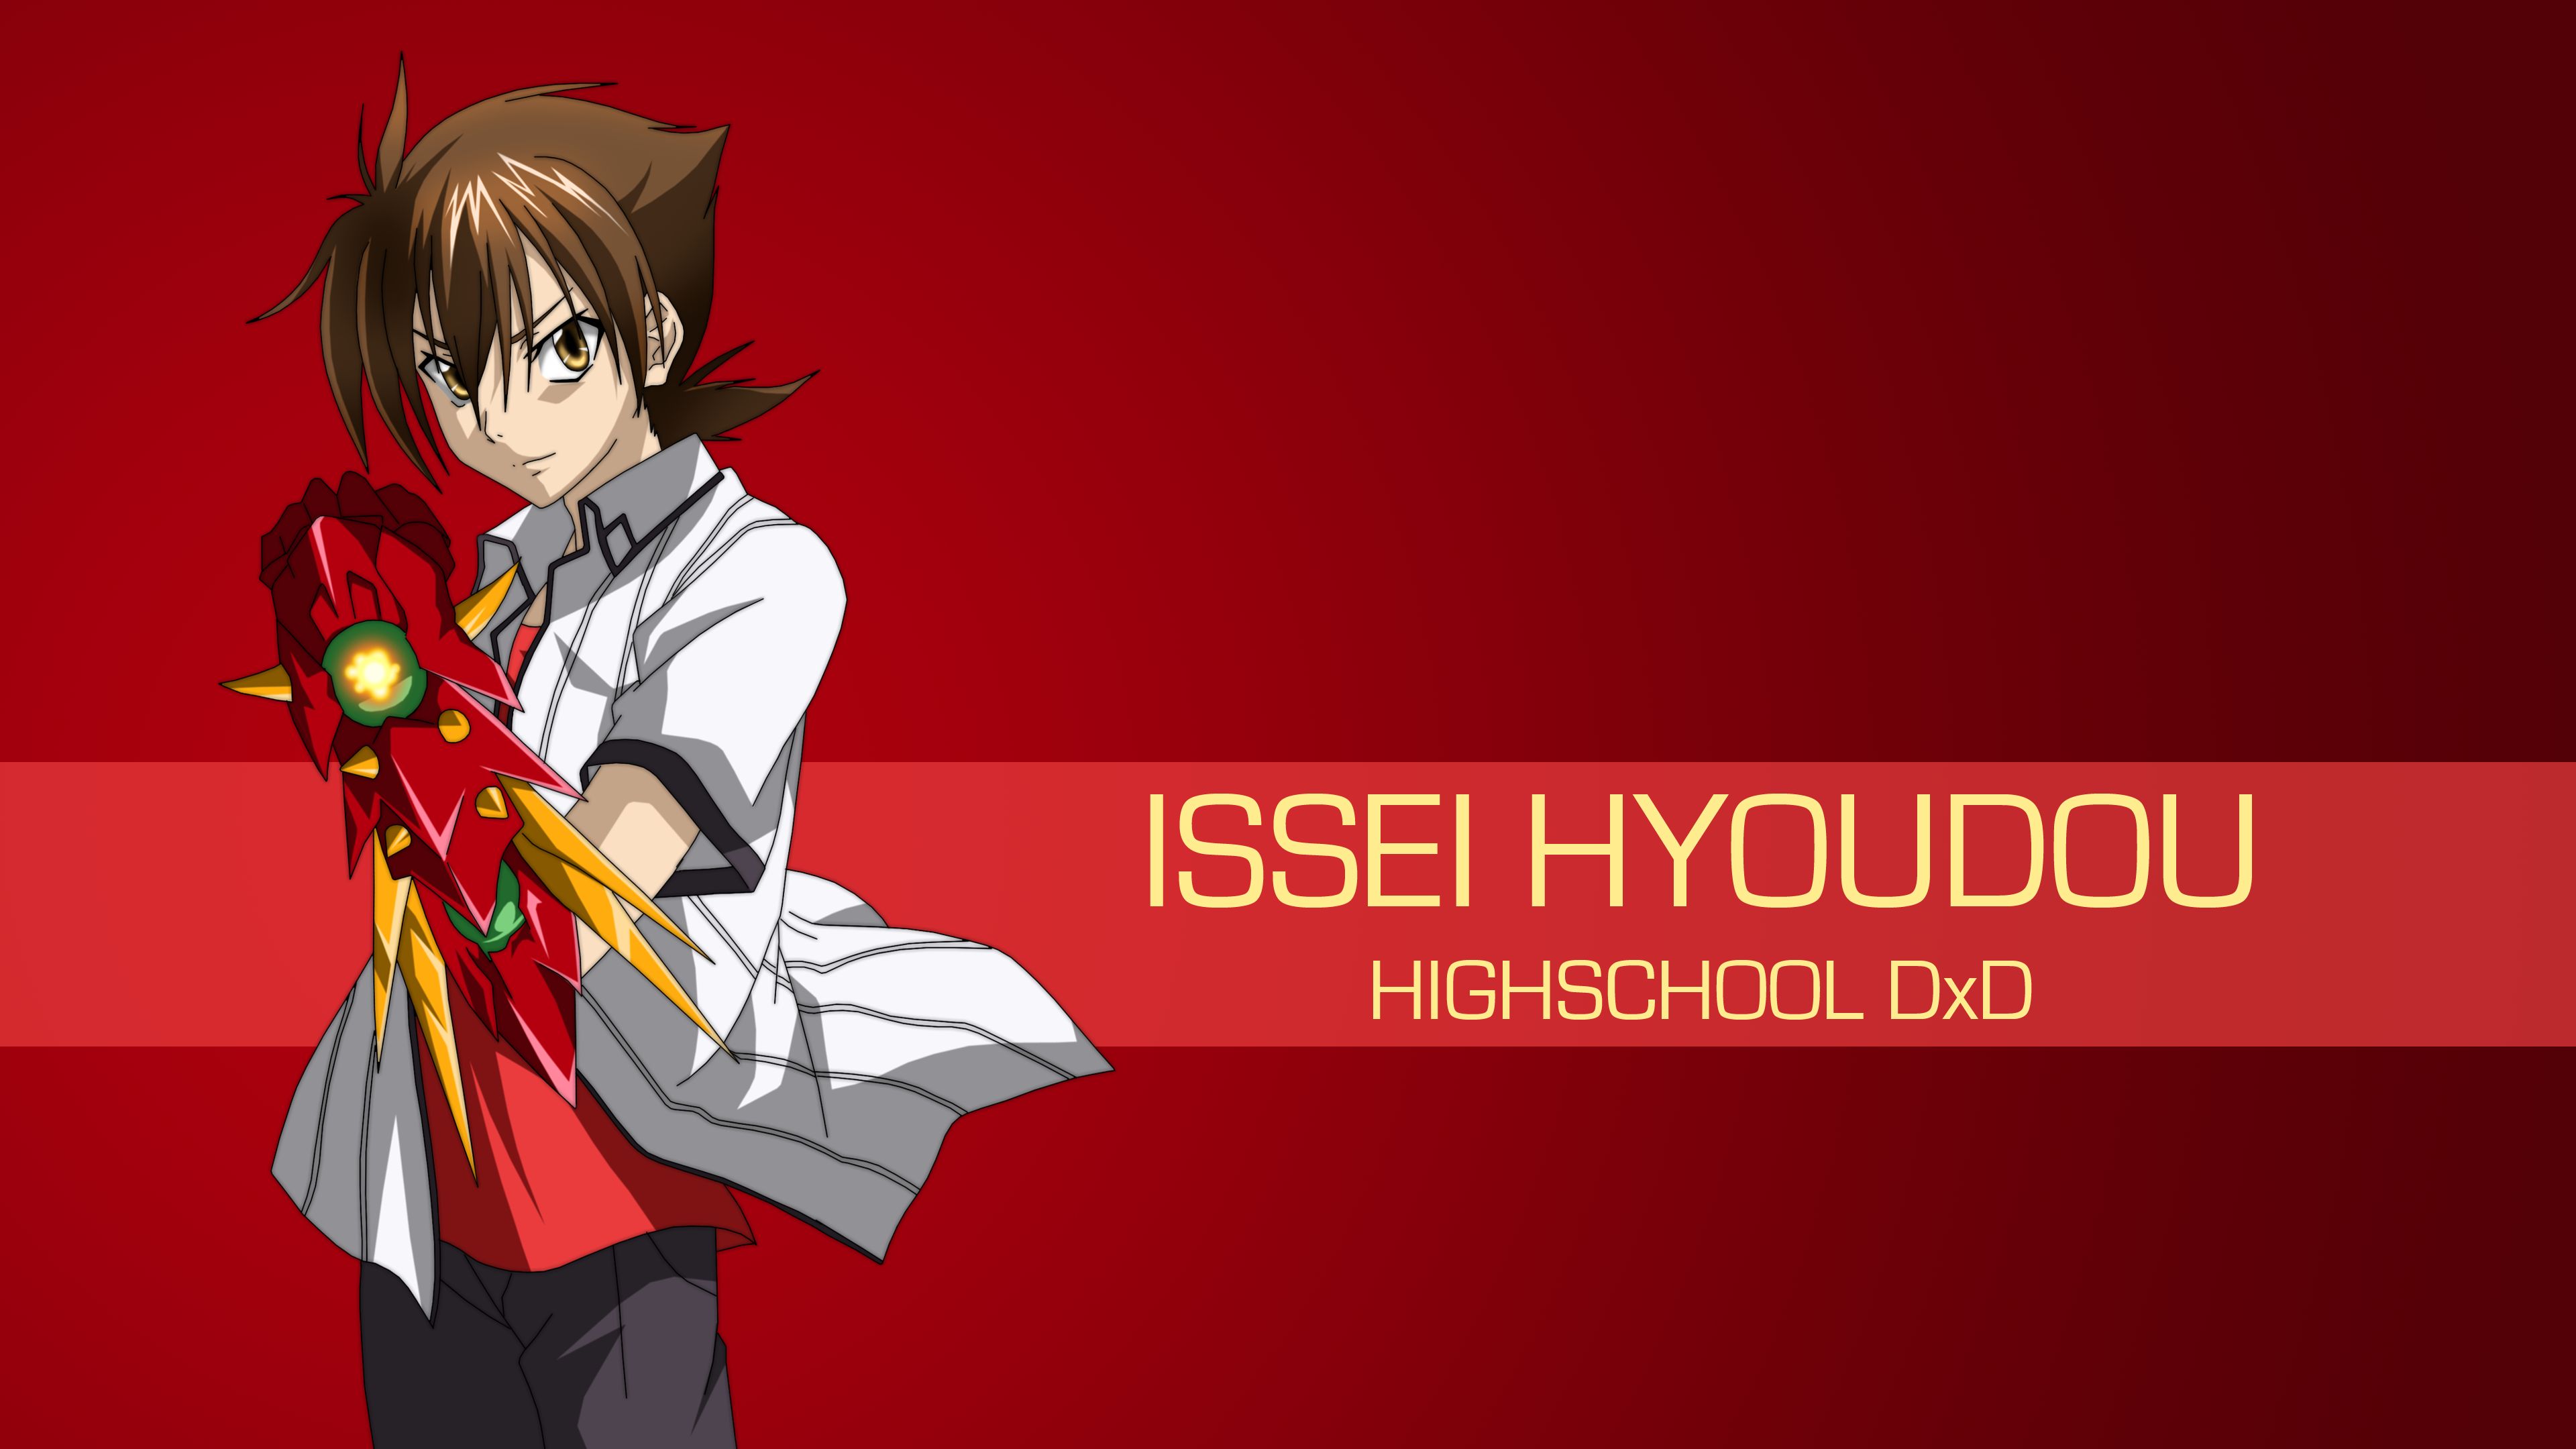 anime, high school dxd, ddraig (high school dxd), issei hyoudou